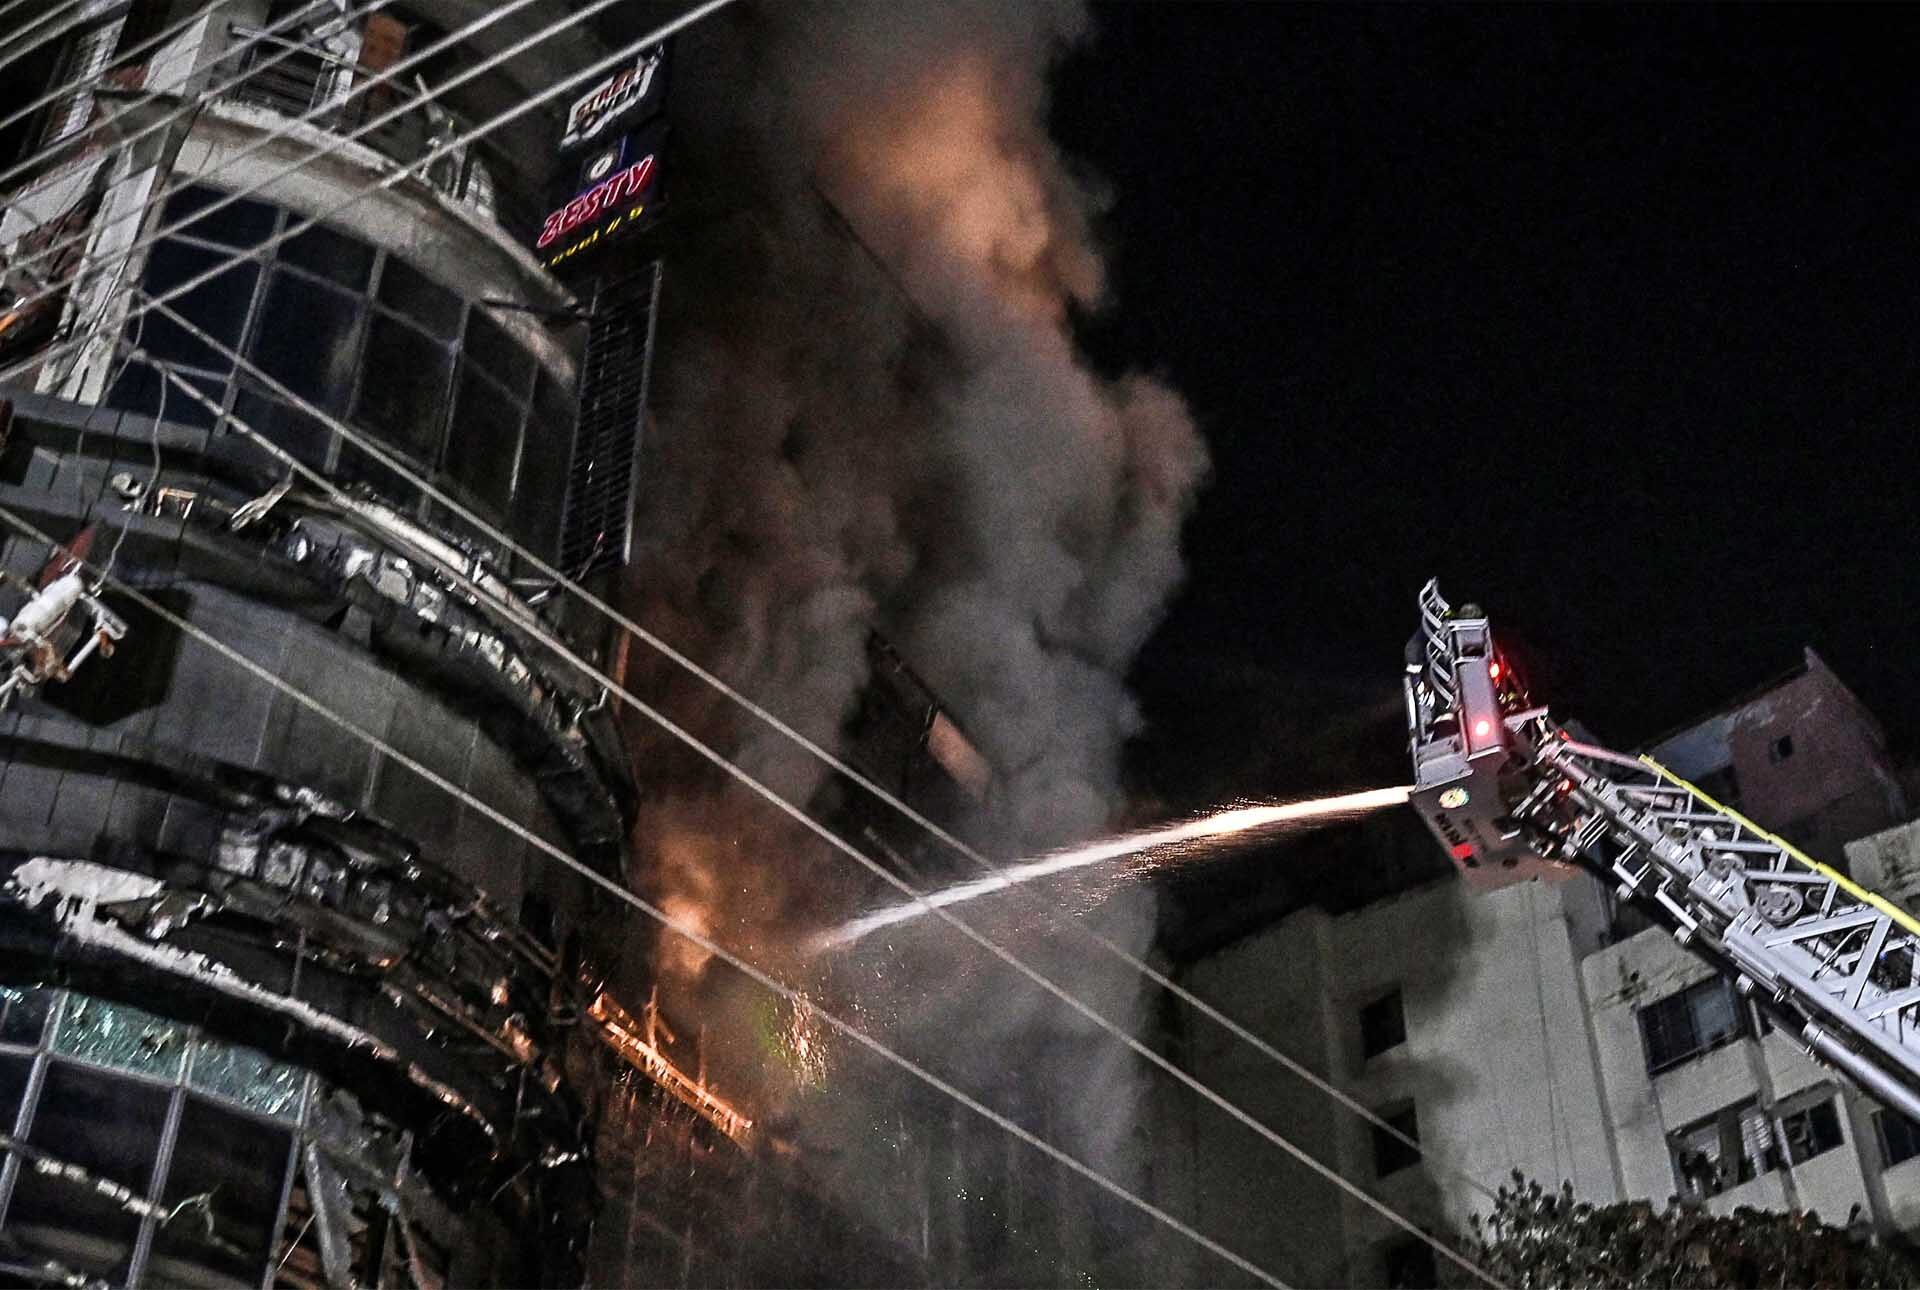 ไฟไหม้ร้านอาหาร “ลามเผาอาคารสูง 7 ชั้น” ในบังกลาเทศ ดับแล้ว 43 ศพ-เจ็บอื้อ